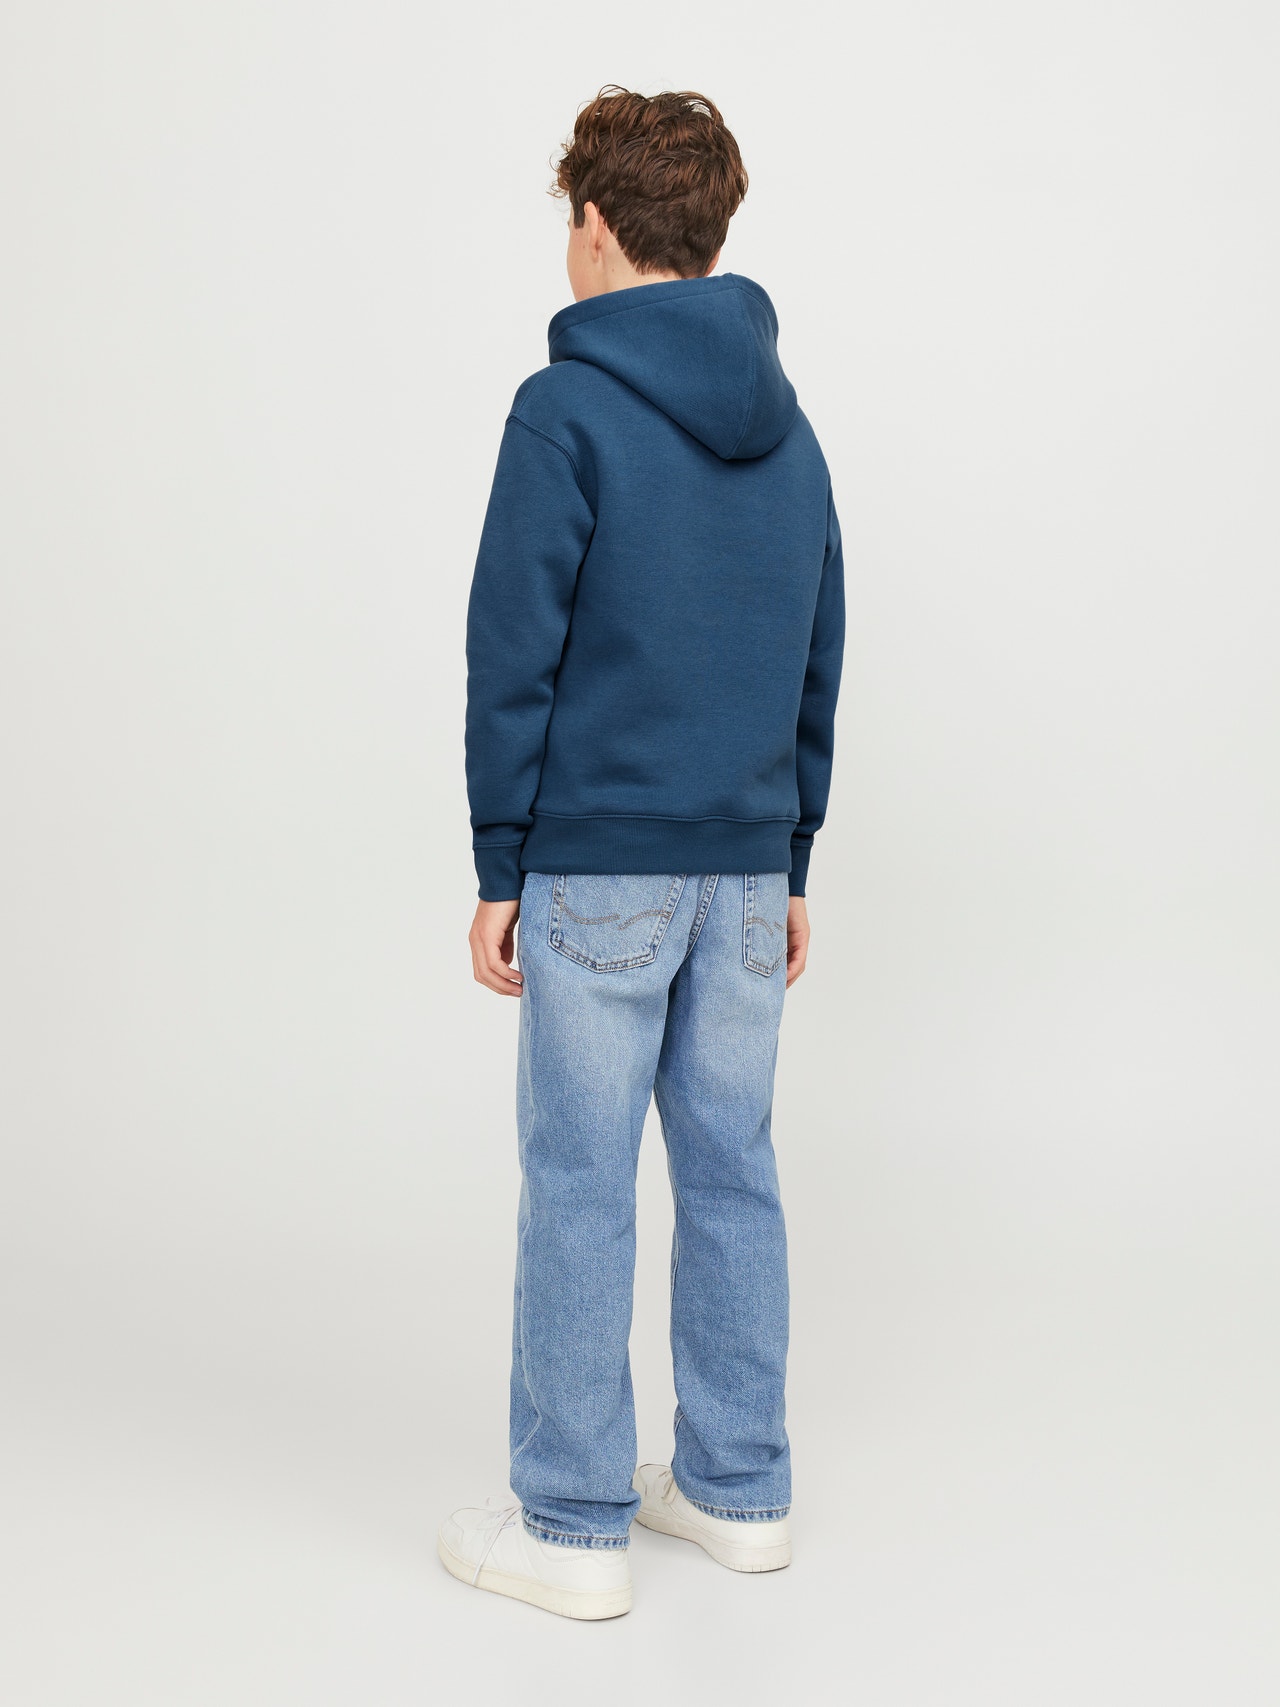 Jack & Jones Relaxed Fit Hoodie Junior Set in sleeves Sweatshirt -Ensign Blue - 12237468